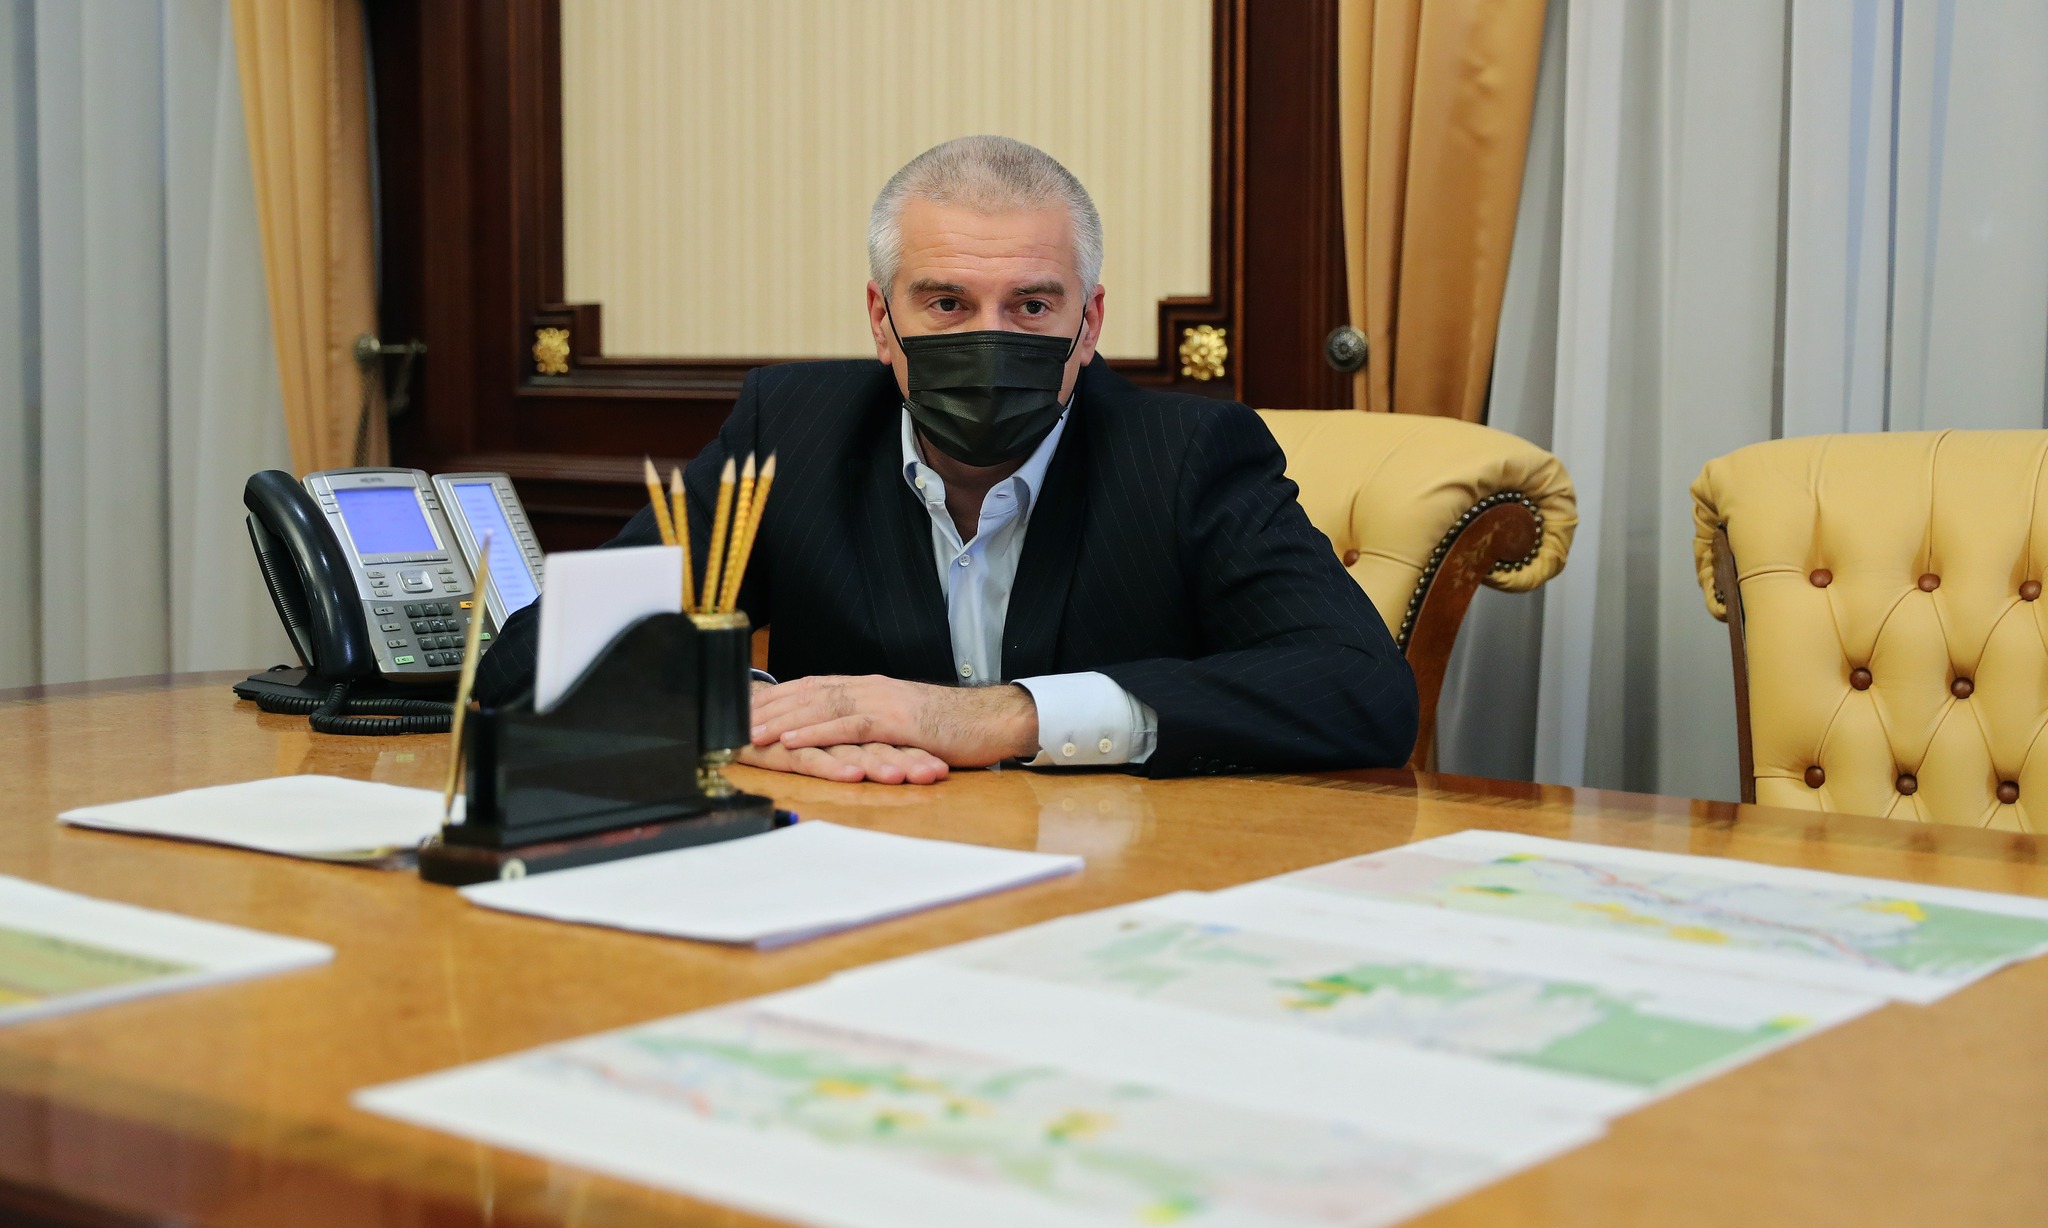 Аксенов назвал депутатов местных советов «штатными метателями дерьма»